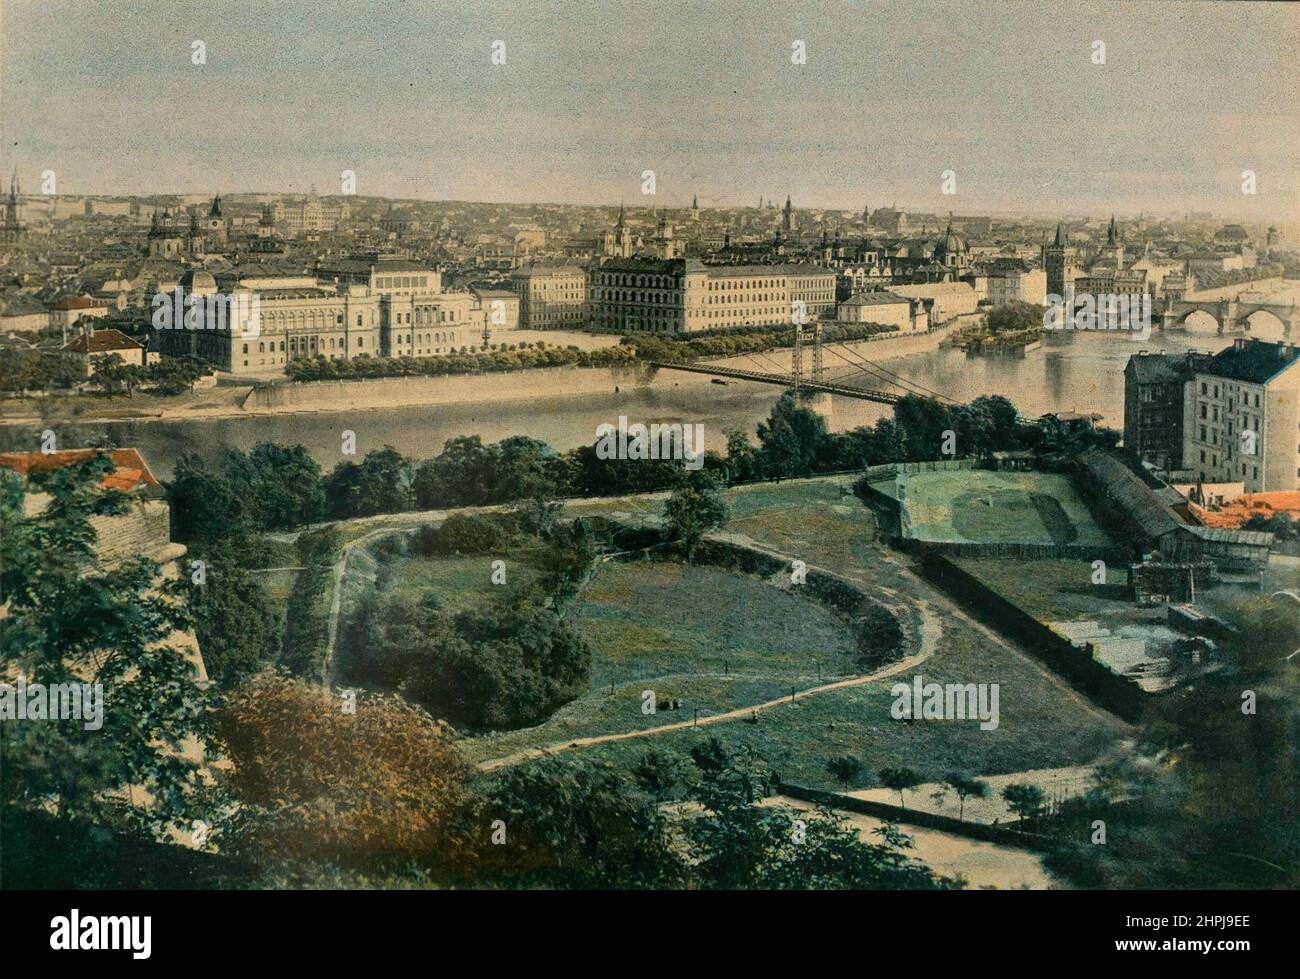 PRAGUE. VUE GÉNÉRALE. Autour Du Monde  - Autriche - Hongrie 1895 - 1900   (2)  - 19 th century french colored photography print Stock Photo